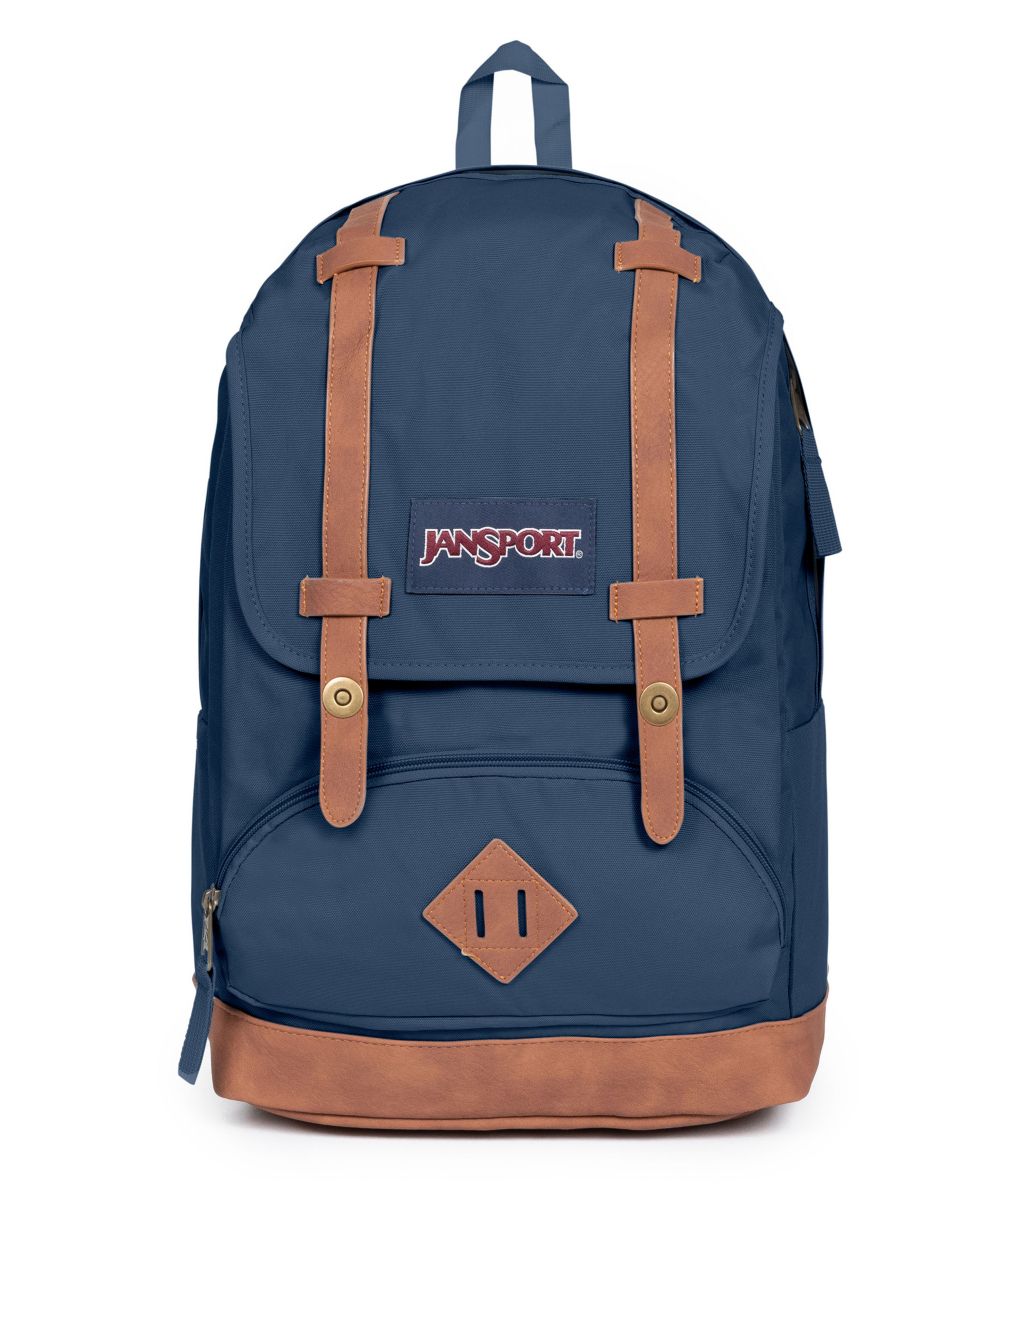 Cortlandt Multi Pocket Backpack image 1